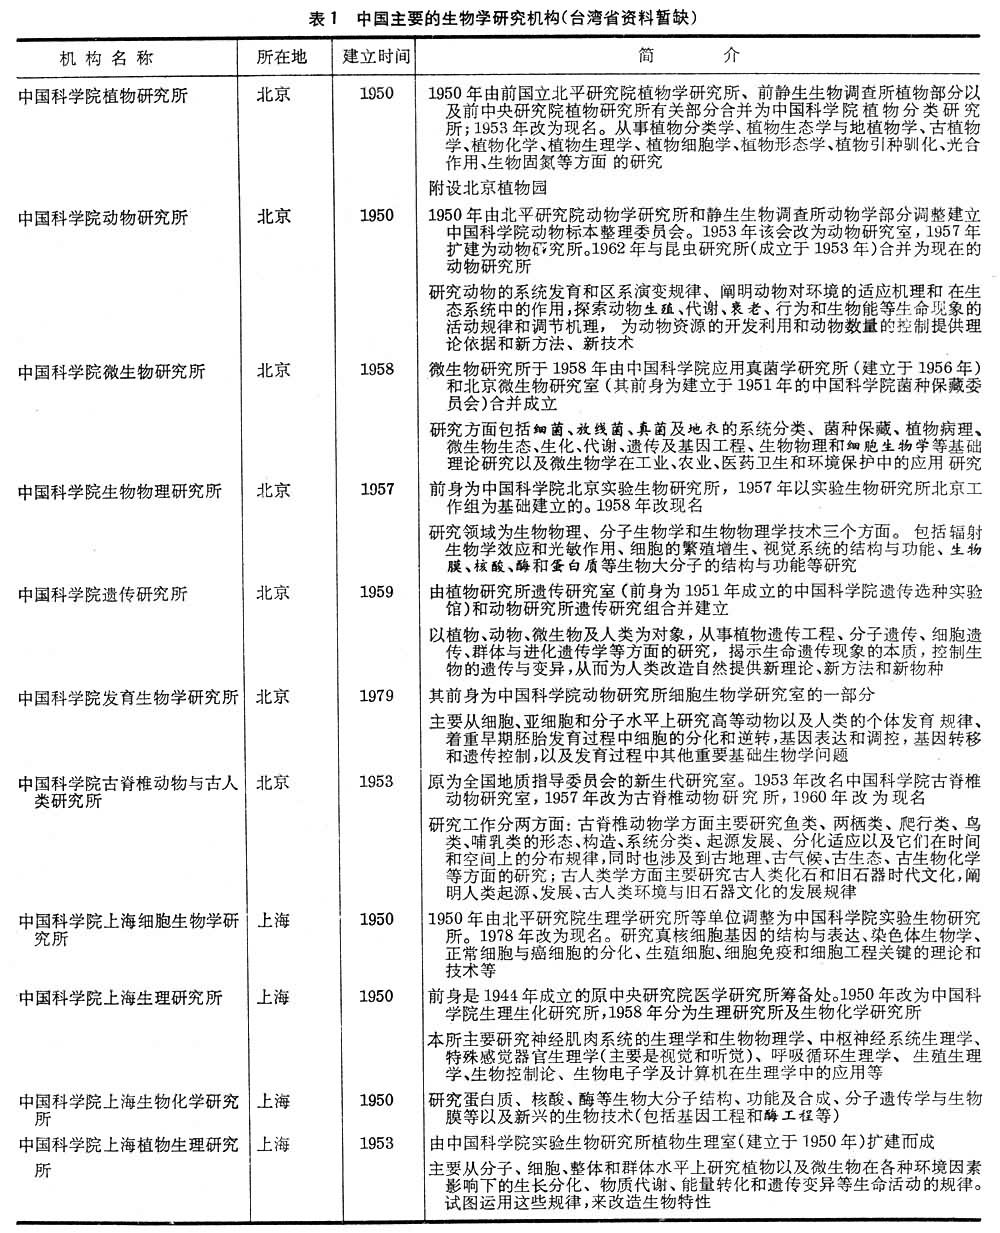 中国主要的生物学研究机构（台湾省资料暂缺）